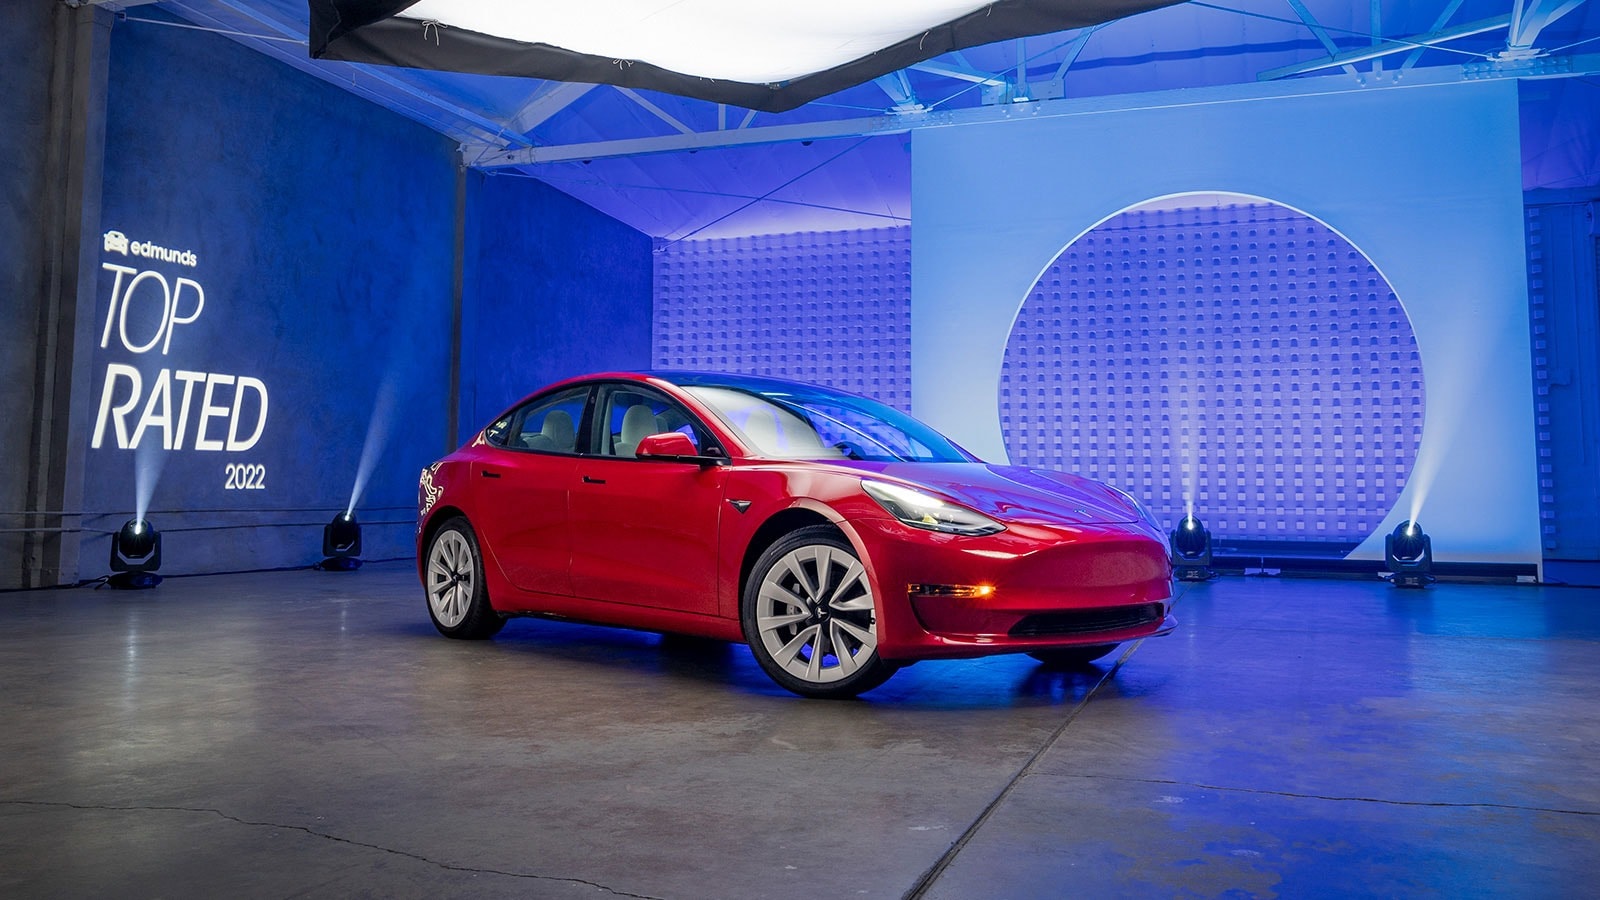 2021 Tesla Model 3: Edmunds Top Rated EV | Edmunds Top Rated Awards 2022